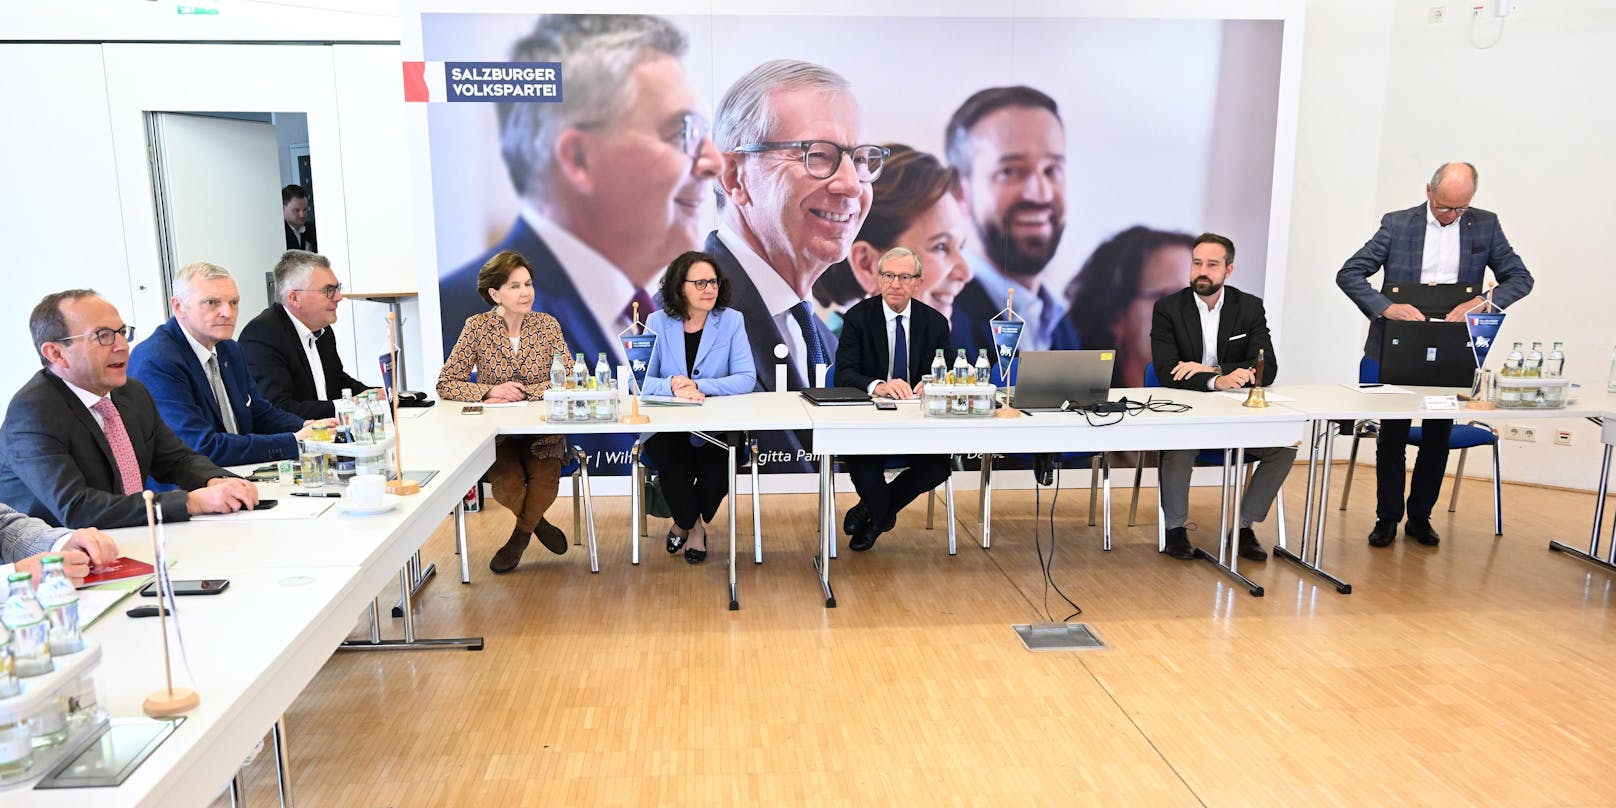 Das ÖVP-Präsidium will an der "Allianz für Salzburg" festhalten.